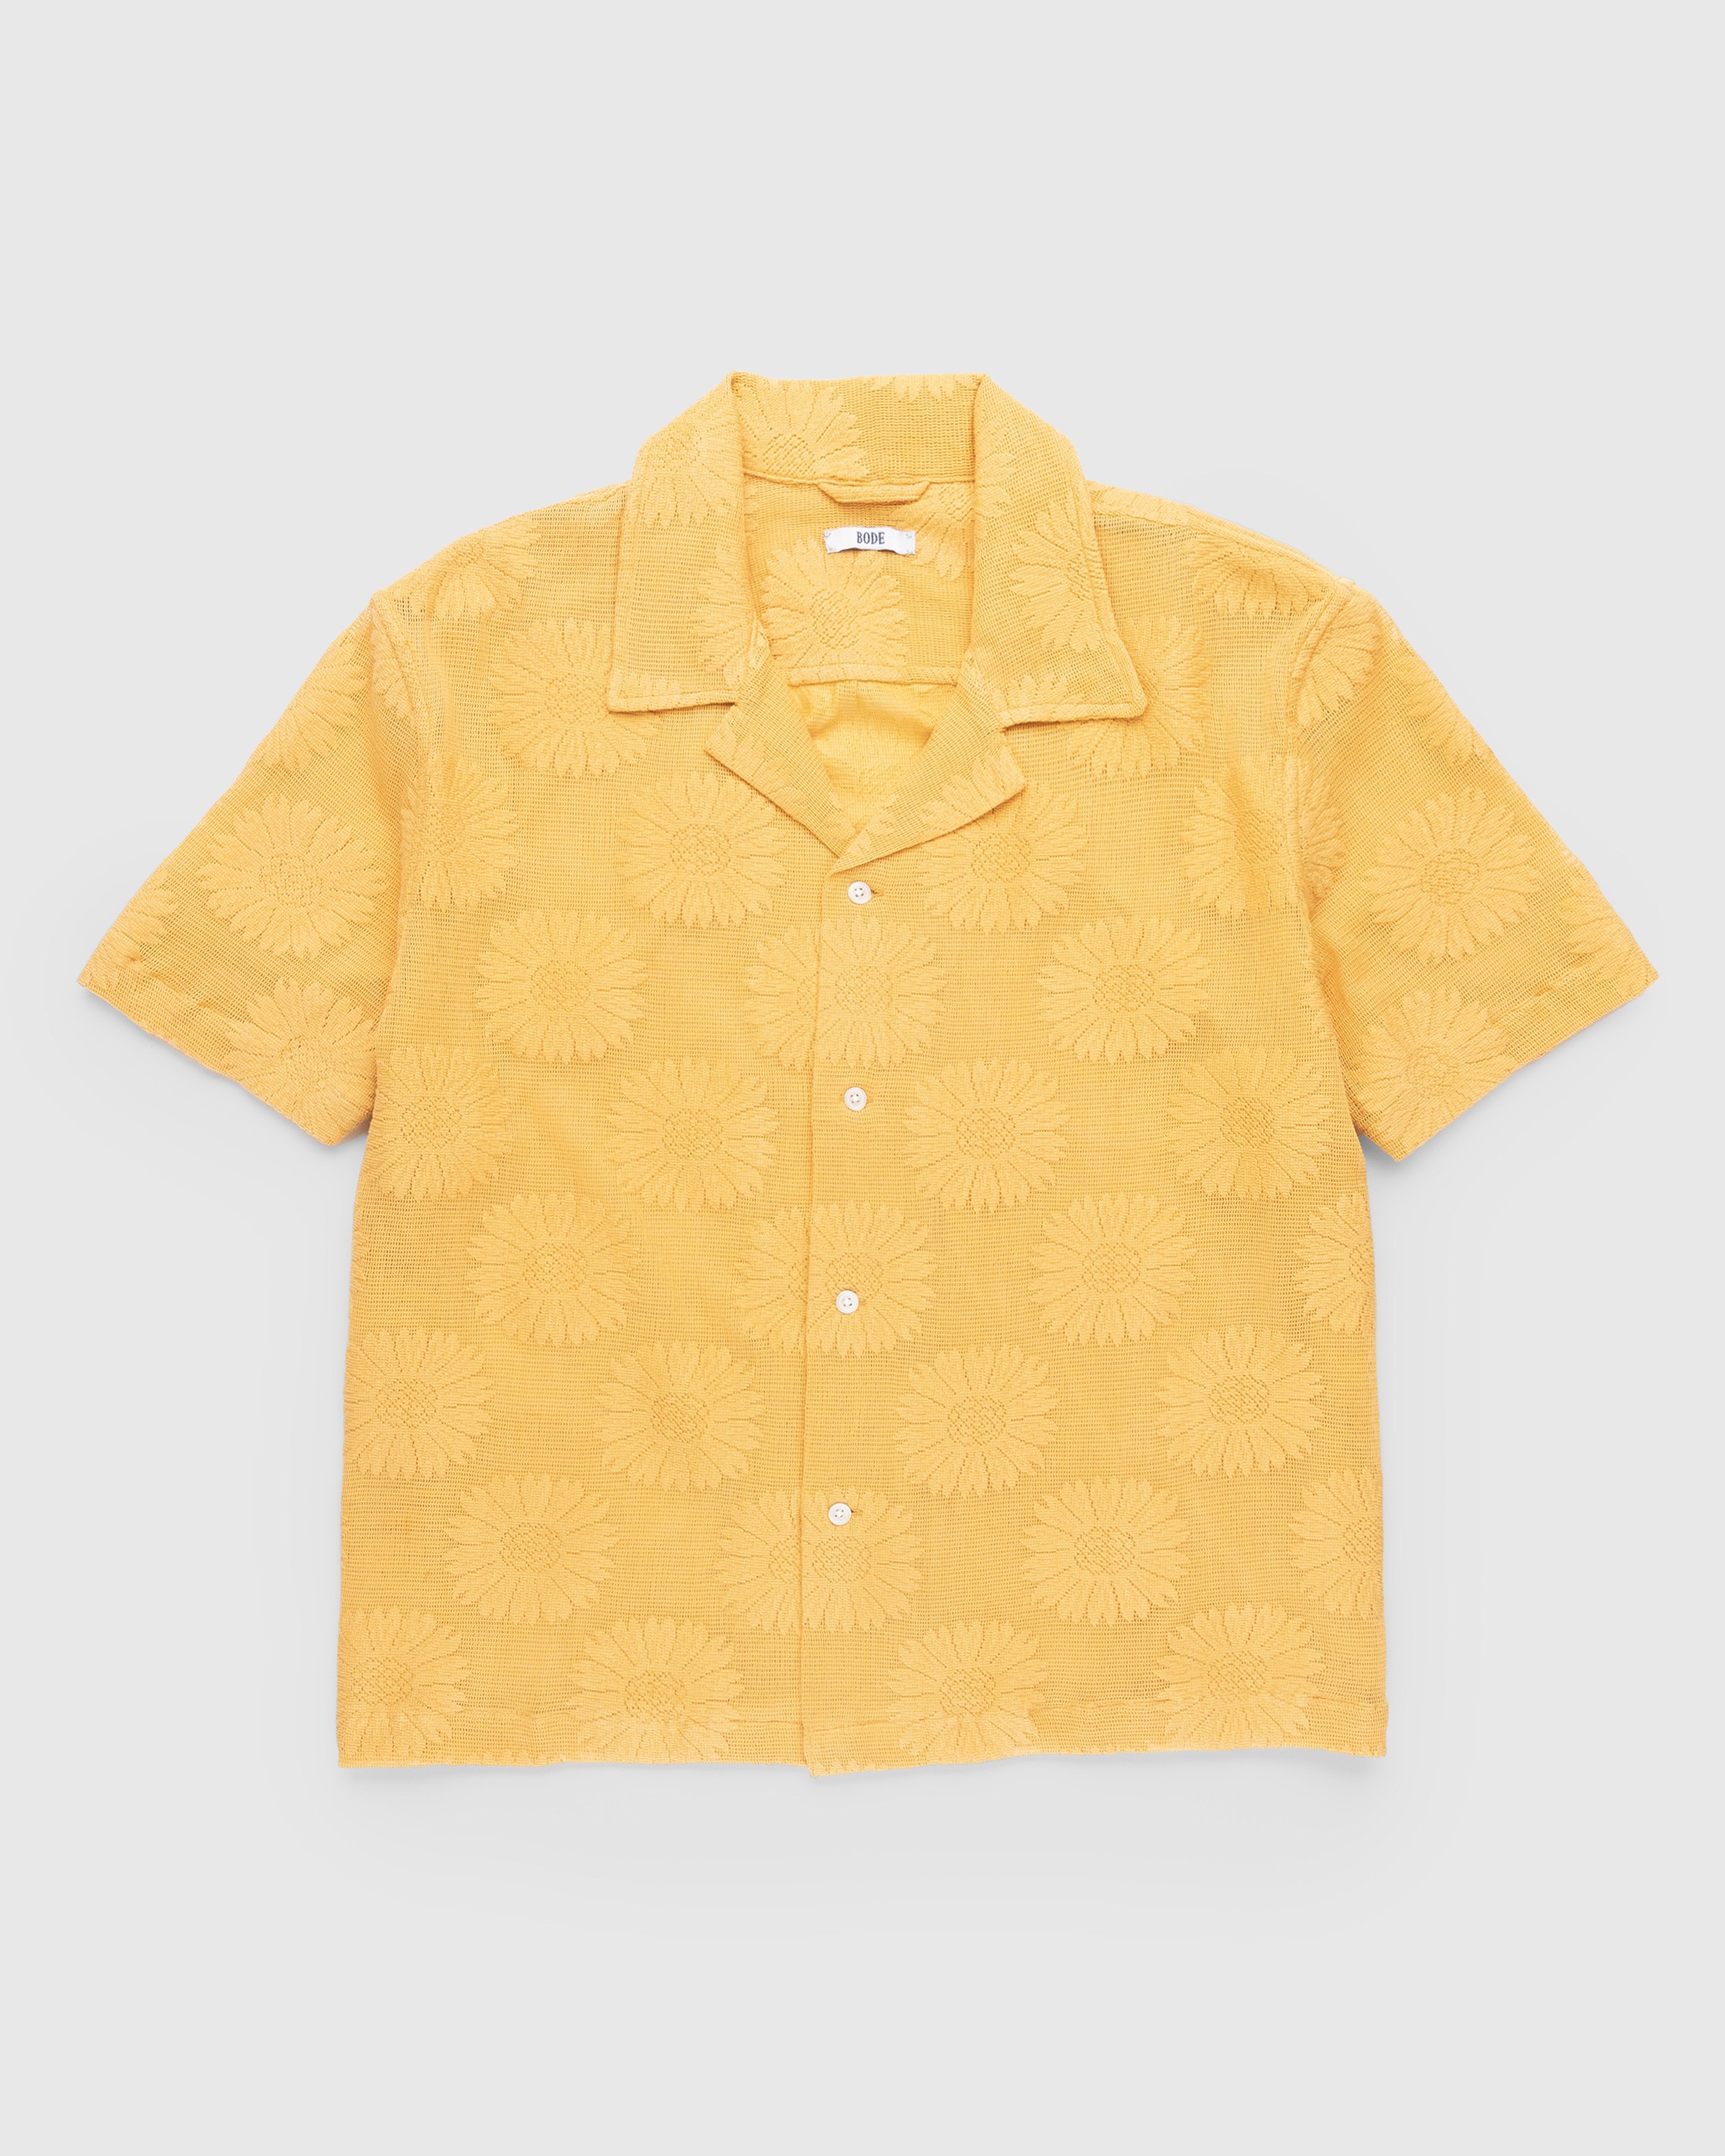 Bode - Sunflower Lace Shortsleeve Shirt - Clothing - Yellow - Image 1